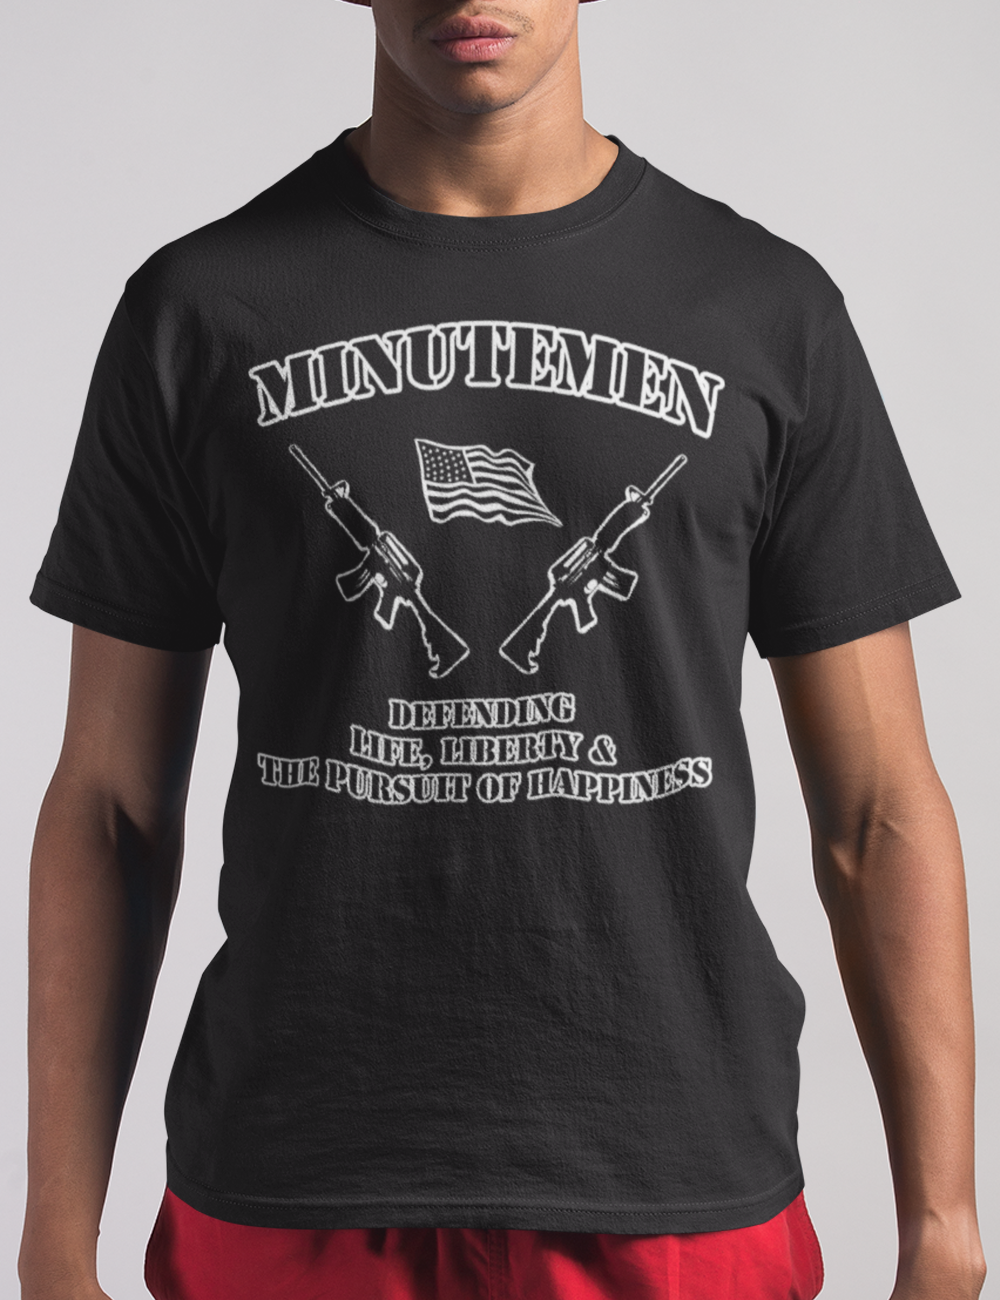 The Minutemen T-Shirt OniTakai